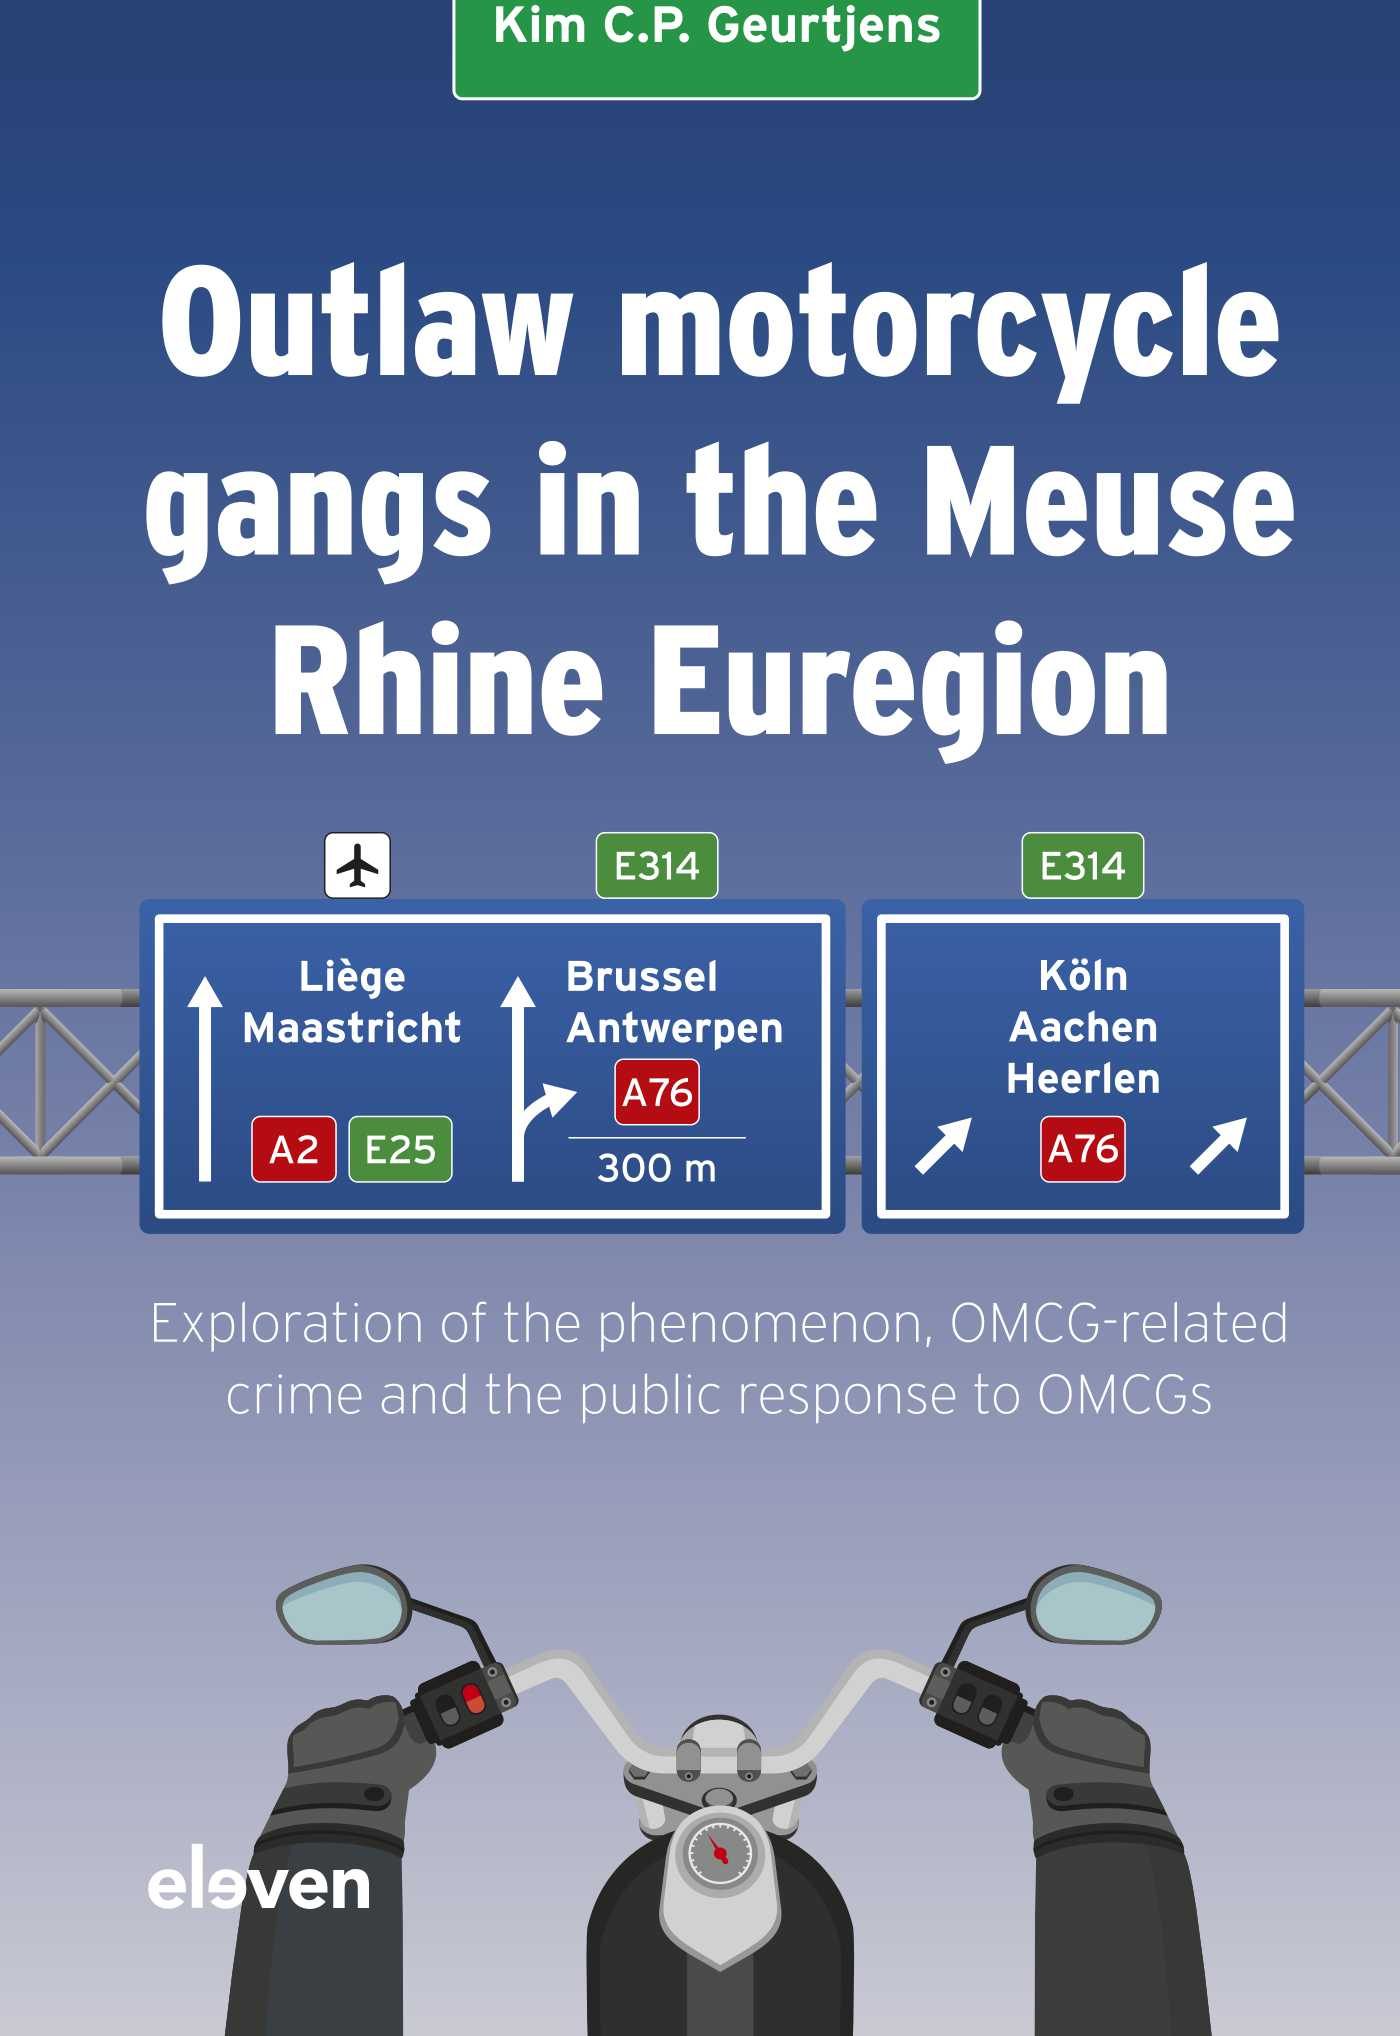 kim_geurtjens_motor_cycle_gangs